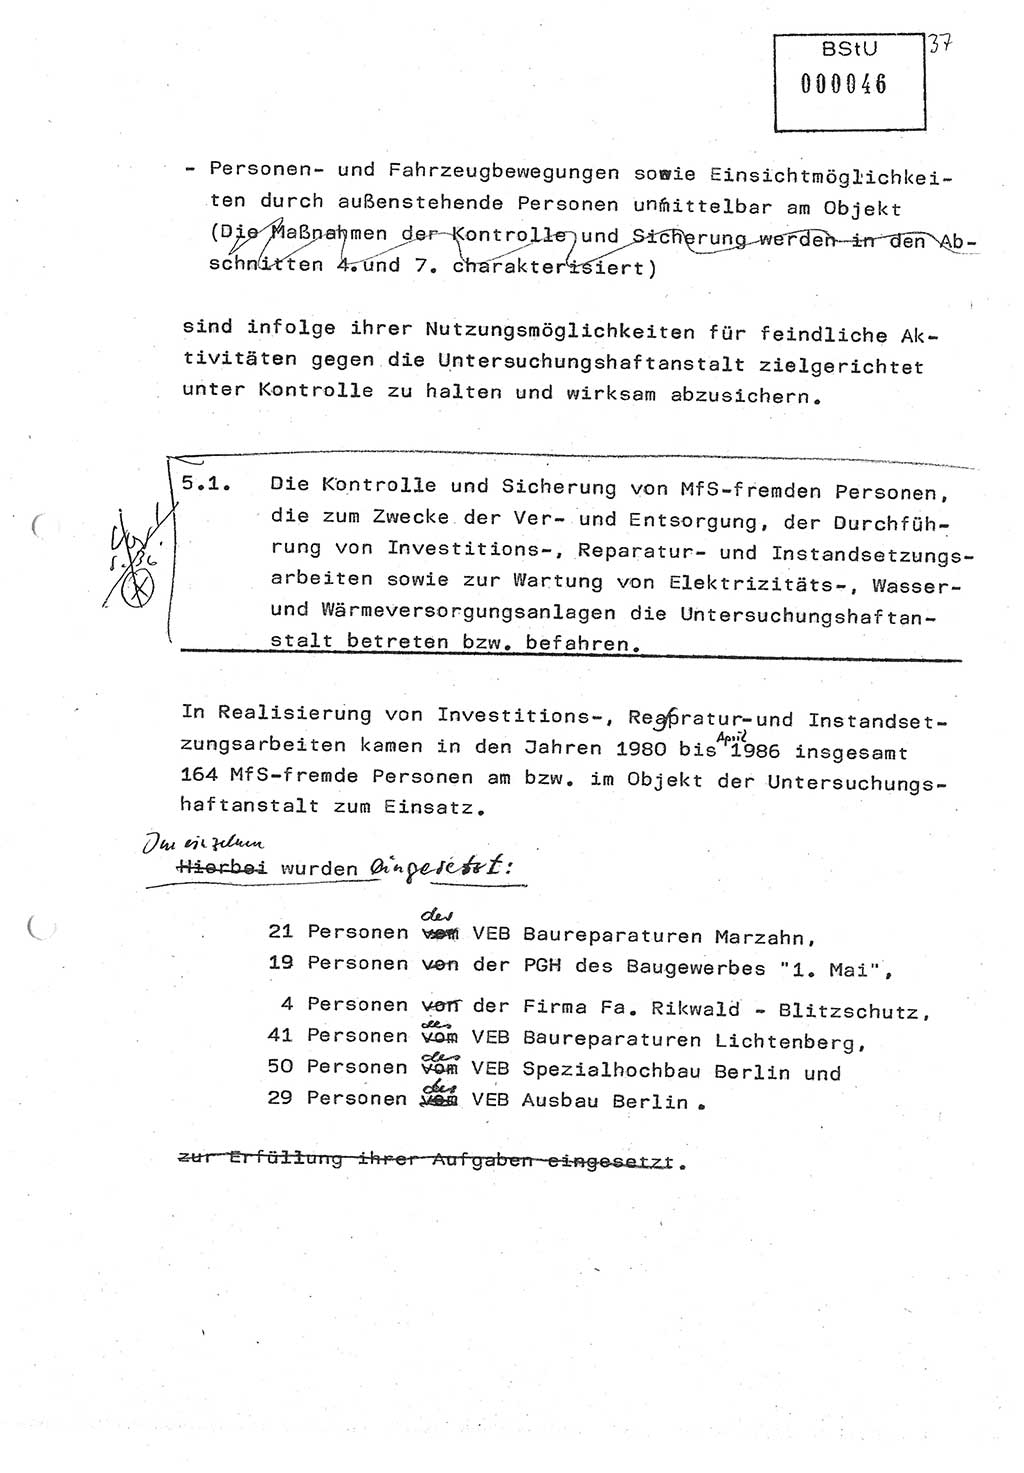 Diplomarbeit (Entwurf) Oberleutnant Peter Parke (Abt. ⅩⅣ), Ministerium für Staatssicherheit (MfS) [Deutsche Demokratische Republik (DDR)], Juristische Hochschule (JHS), Geheime Verschlußsache (GVS) o001-98/86, Potsdam 1986, Seite 46 (Dipl.-Arb. MfS DDR JHS GVS o001-98/86 1986, S. 46)